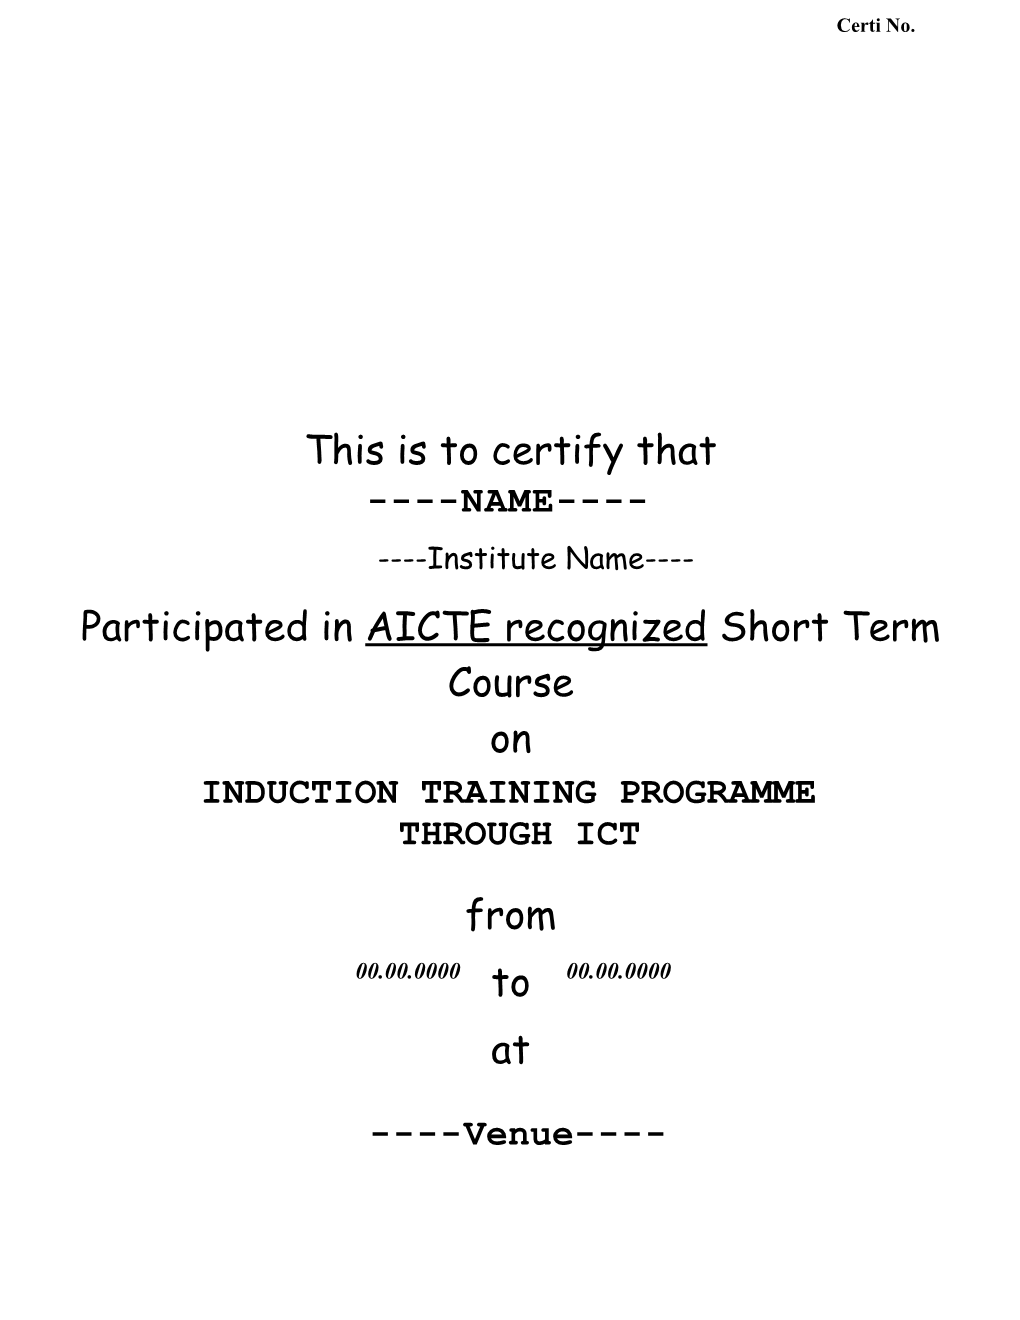 Participated in AICTE Recognizedshort Term Course